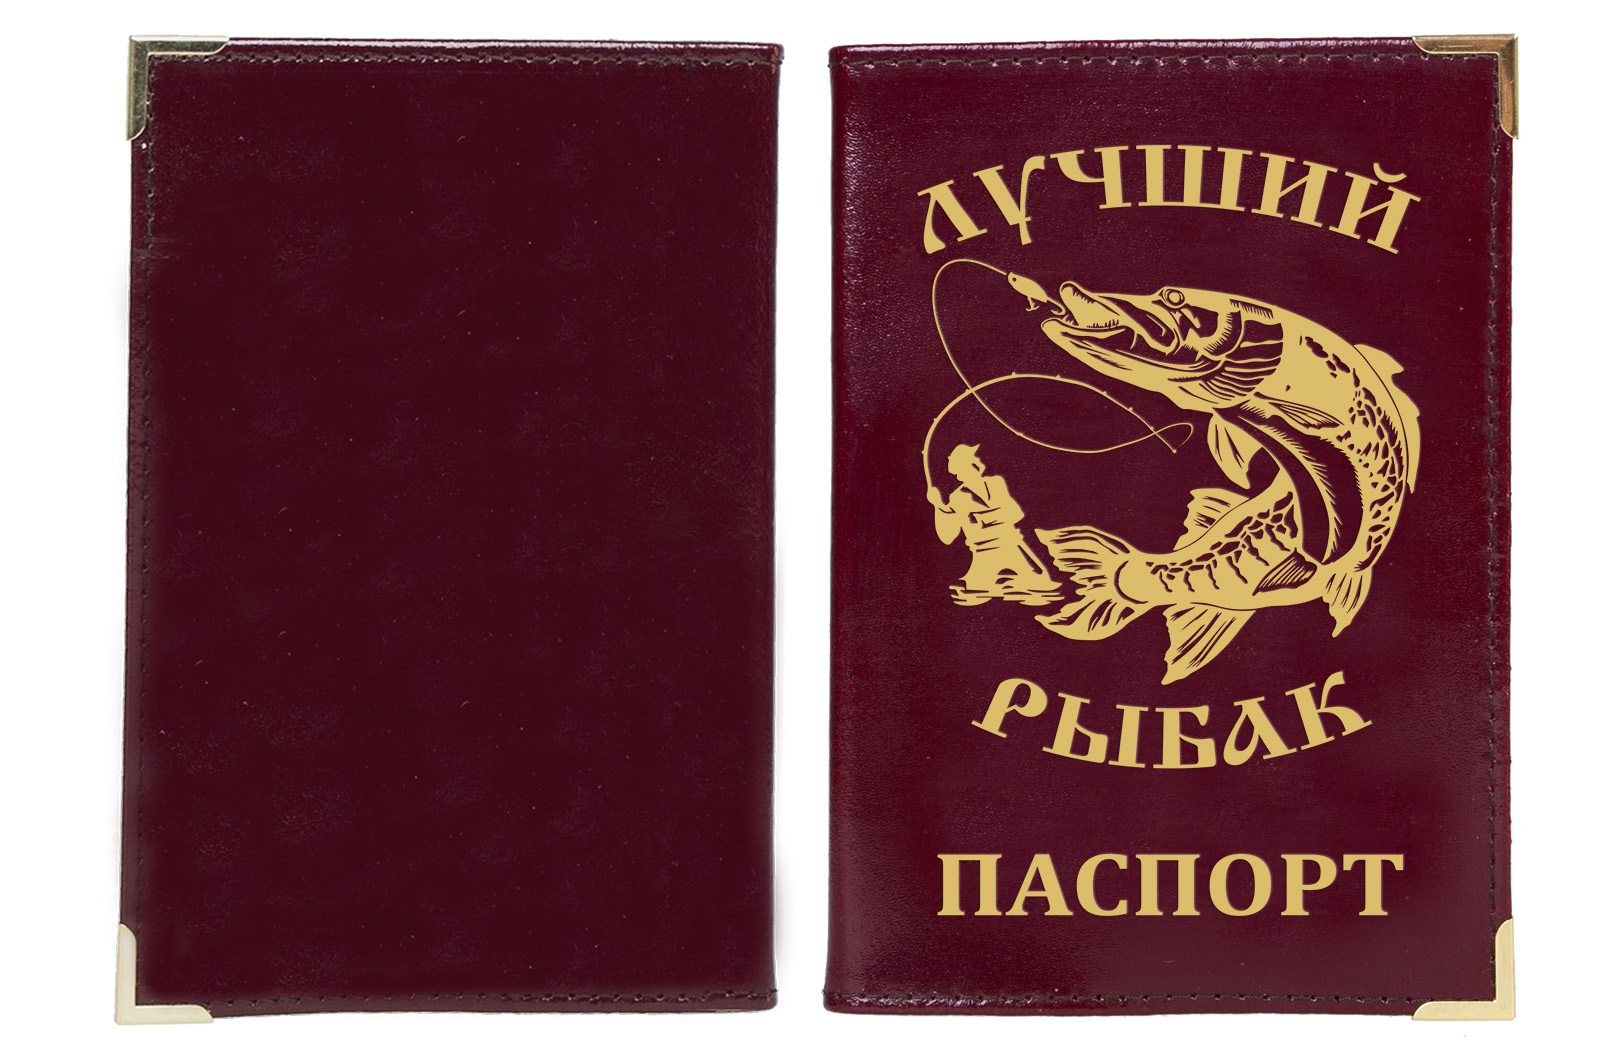 Обложка на паспорт "Лучший рыбак" с тиснением 